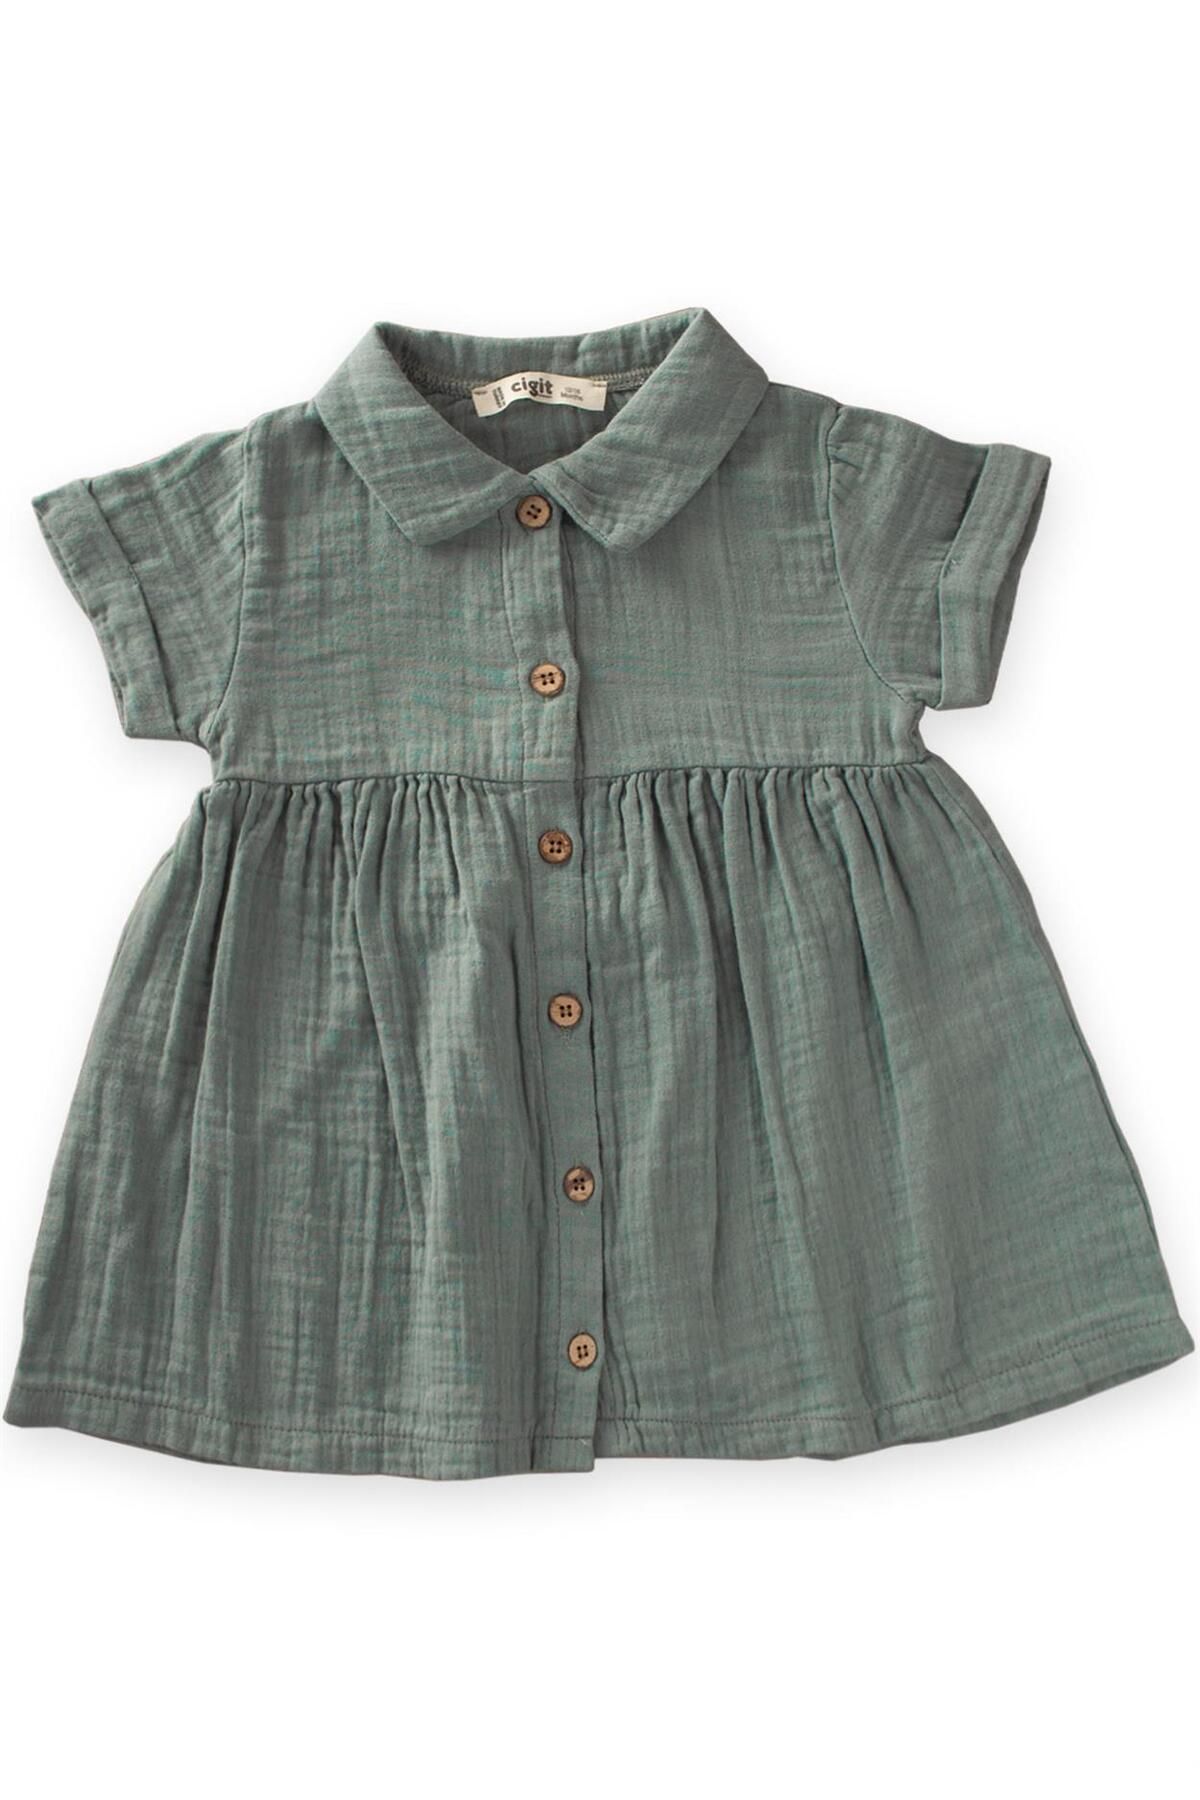 Cigit Bebe Yakalı Robası Büzgülü Müslin Elbise 1-7 Yaş Çağla Yeşili